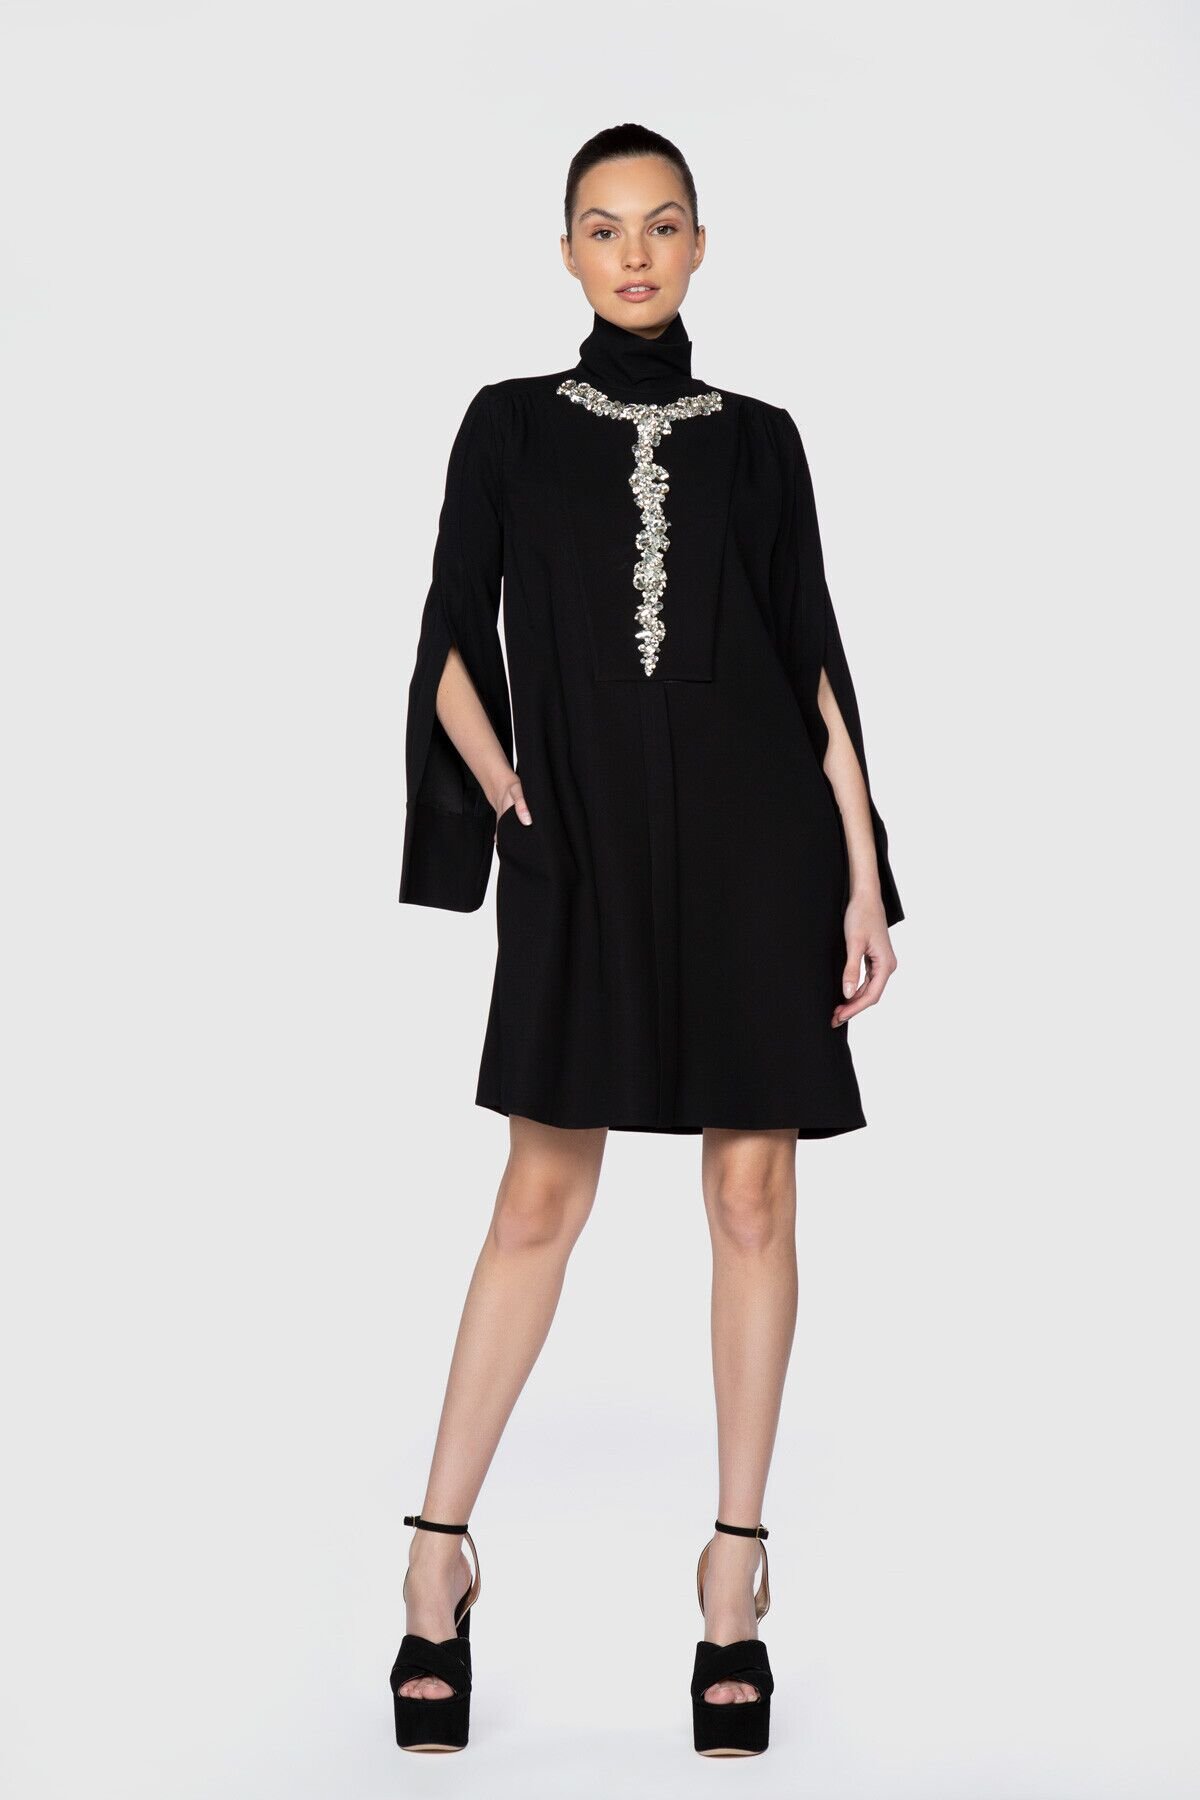 Dice Kayek İşlemeli Yırtmaç Kol Detaylı Diz Üstü Siyah Tasarım Elbise